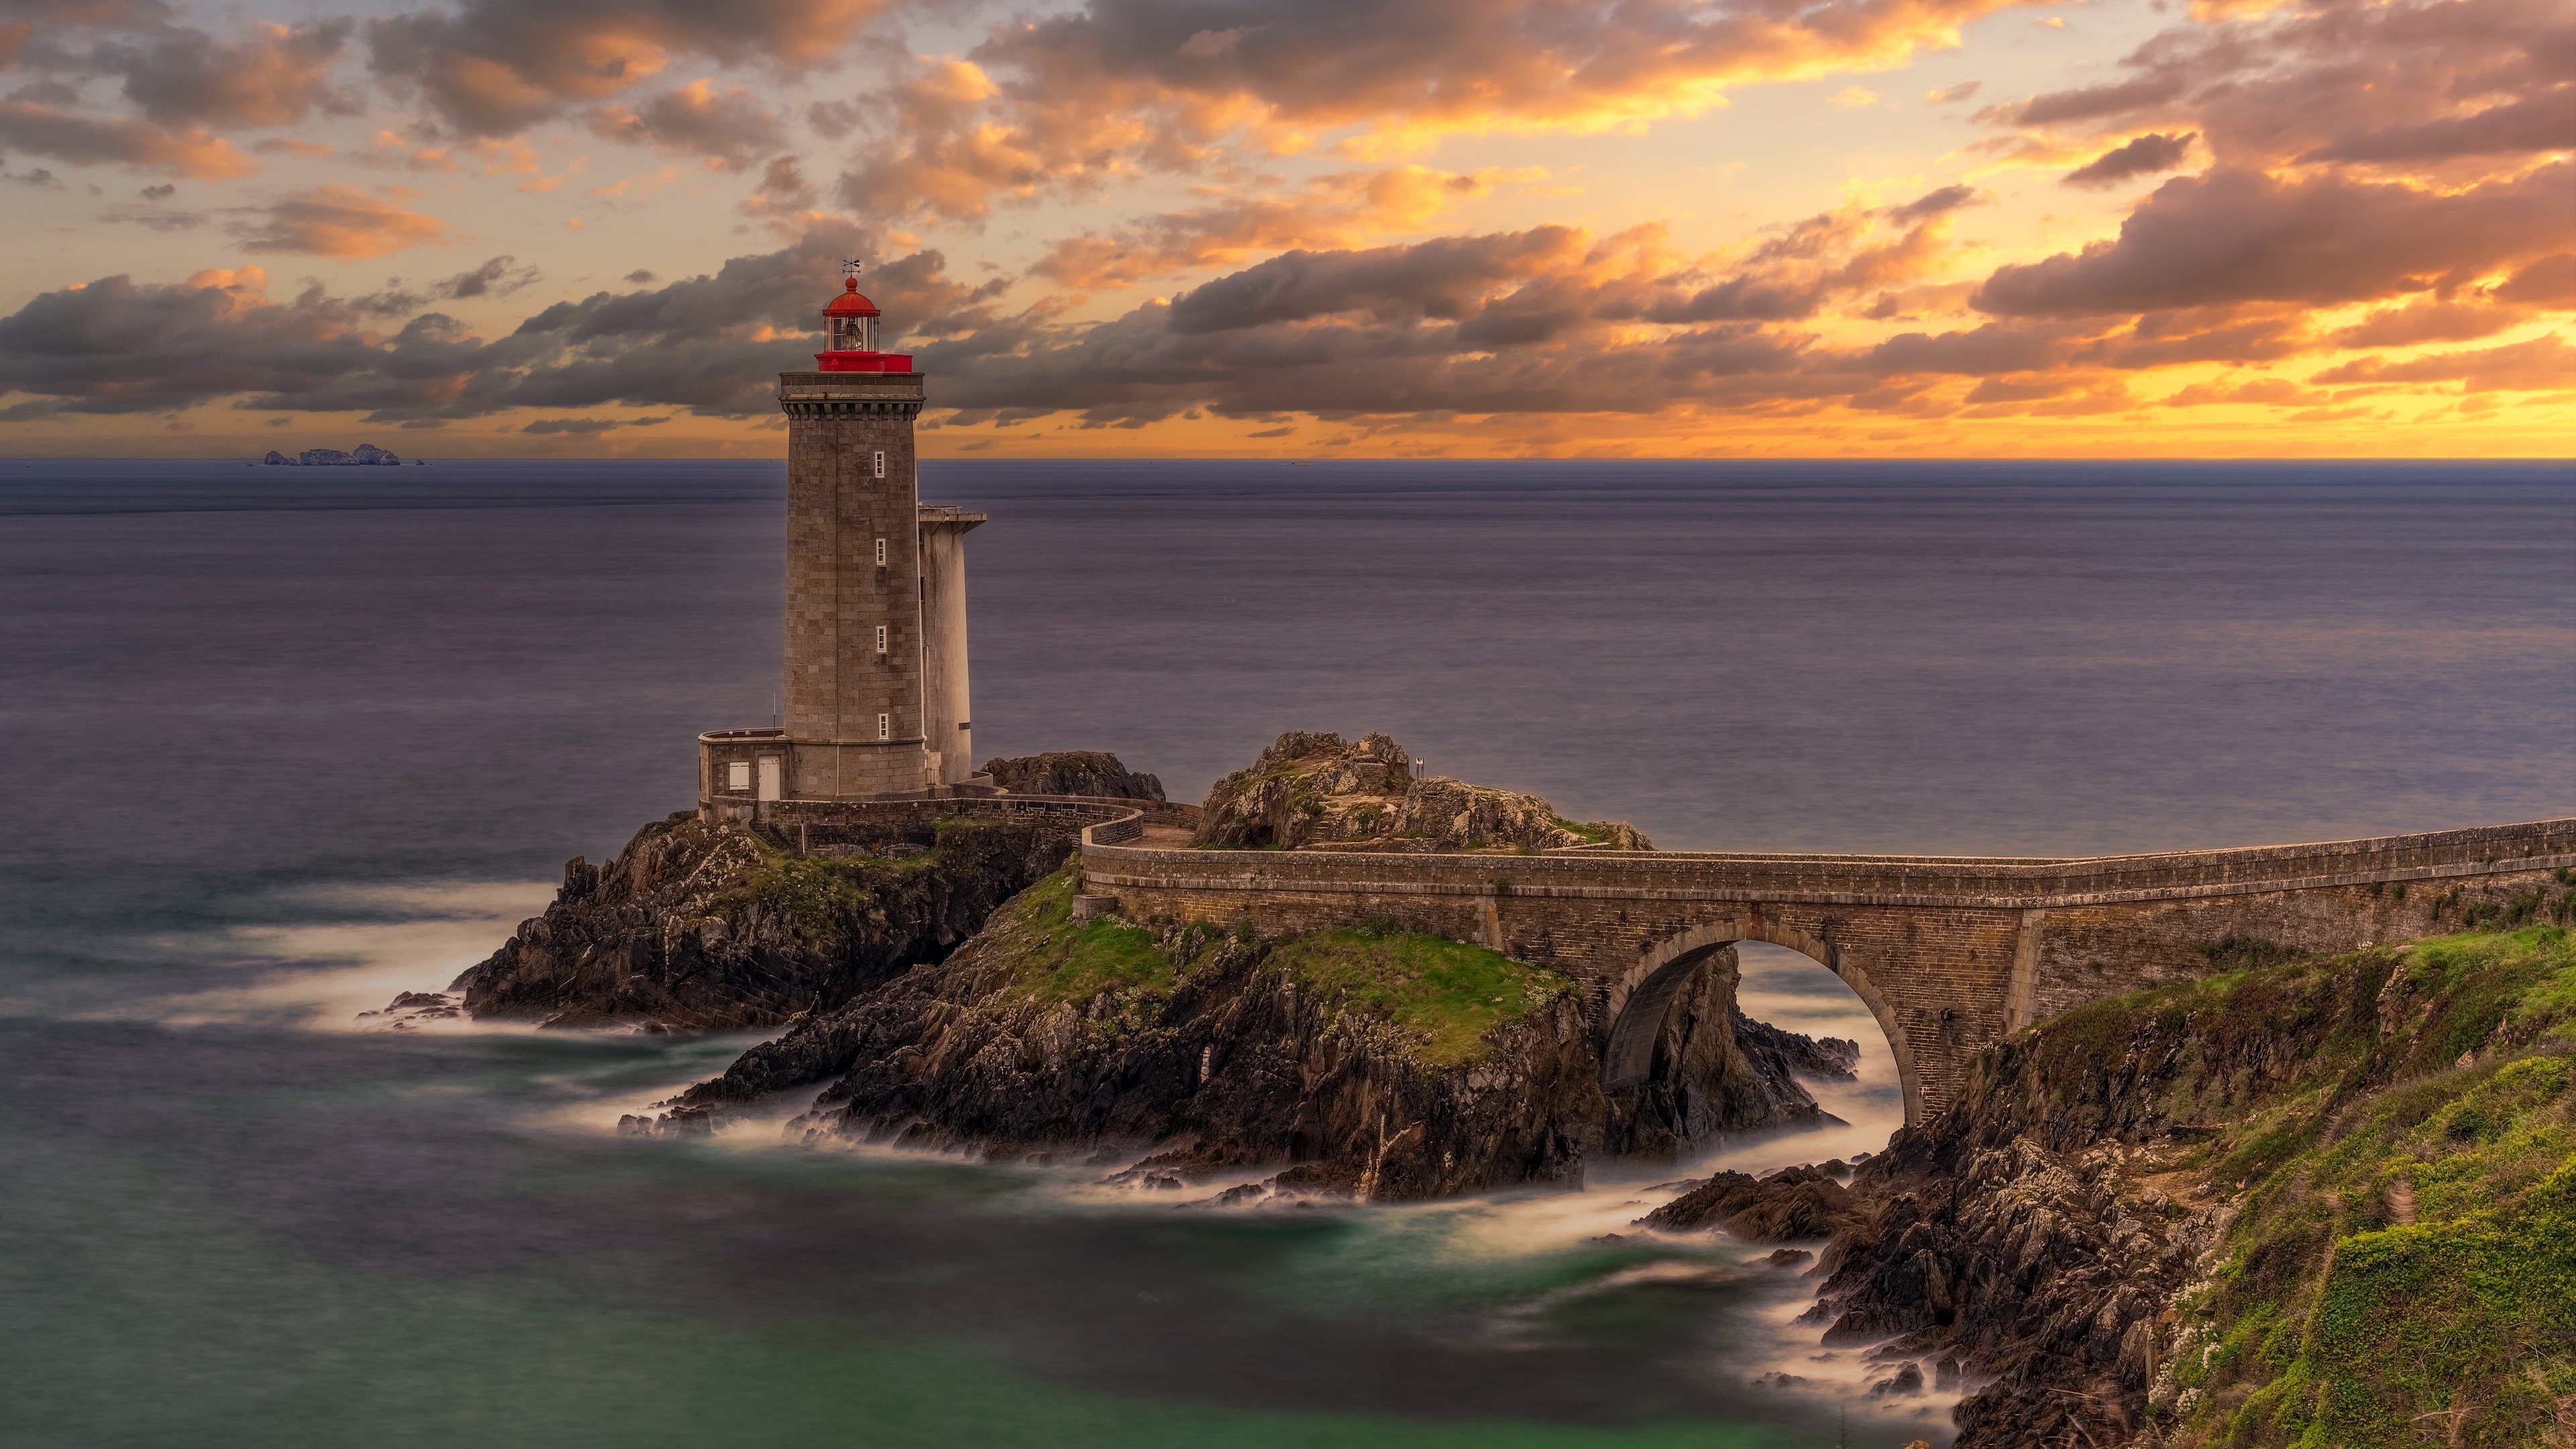 Lighthouse, Ultra HD wallpaper, Breathtaking view, Coastal beauty, 3840x2160 4K Desktop